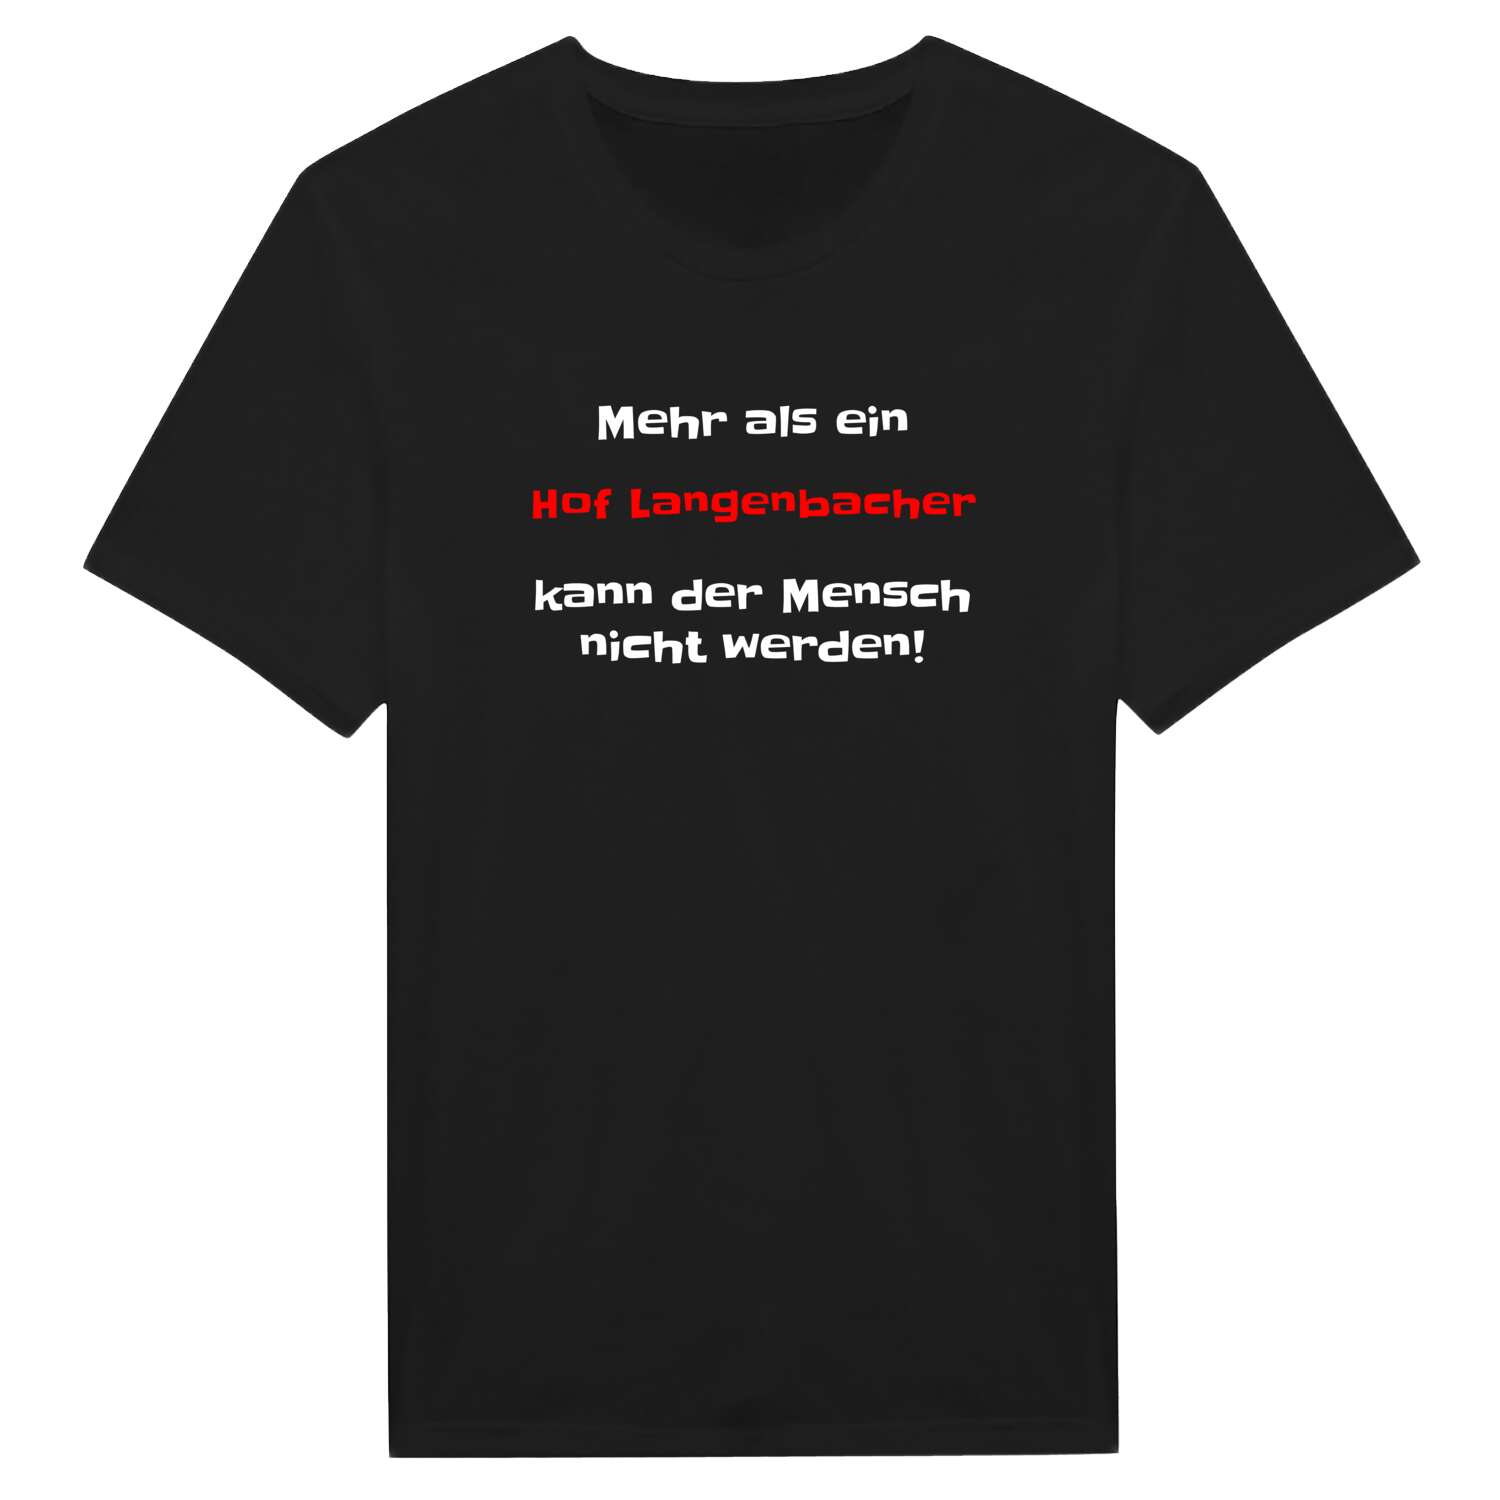 Hof Langenbach T-Shirt »Mehr als ein«